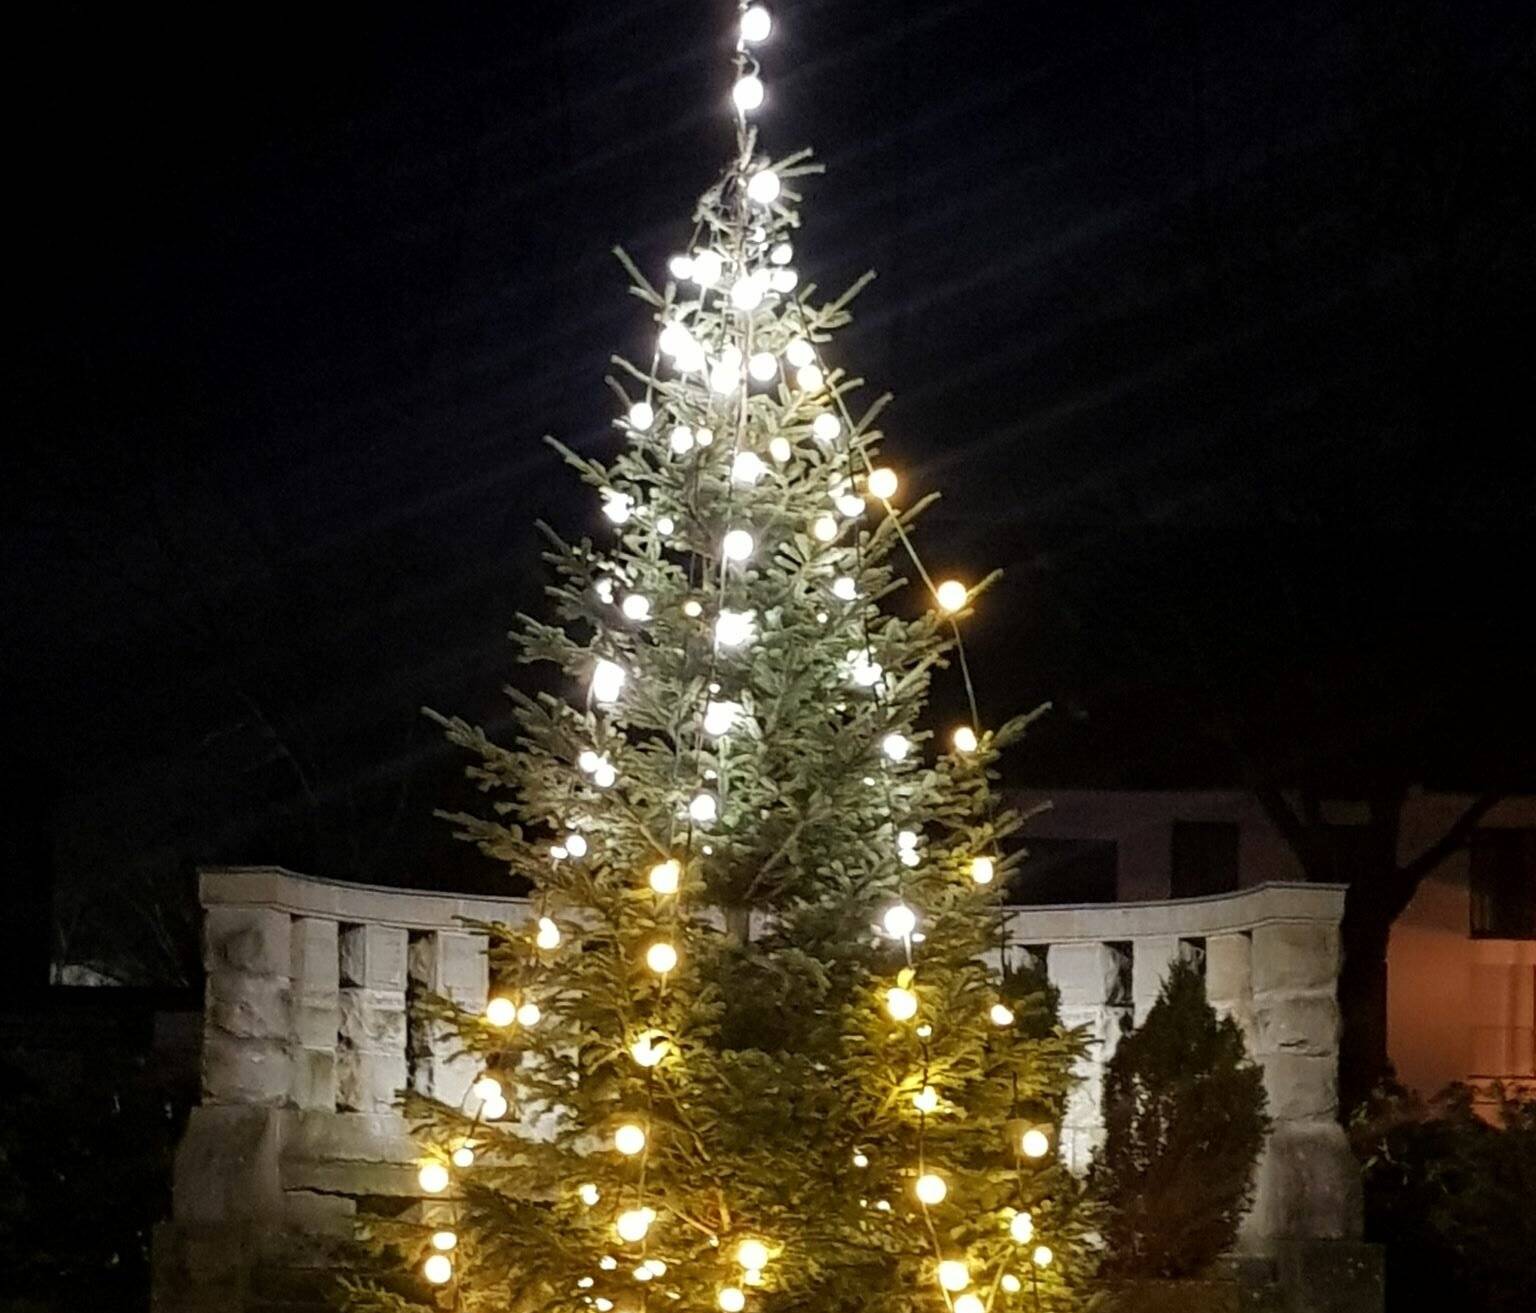  Da strahlt er: Der Weihnachtsbaum in Unterbach. 